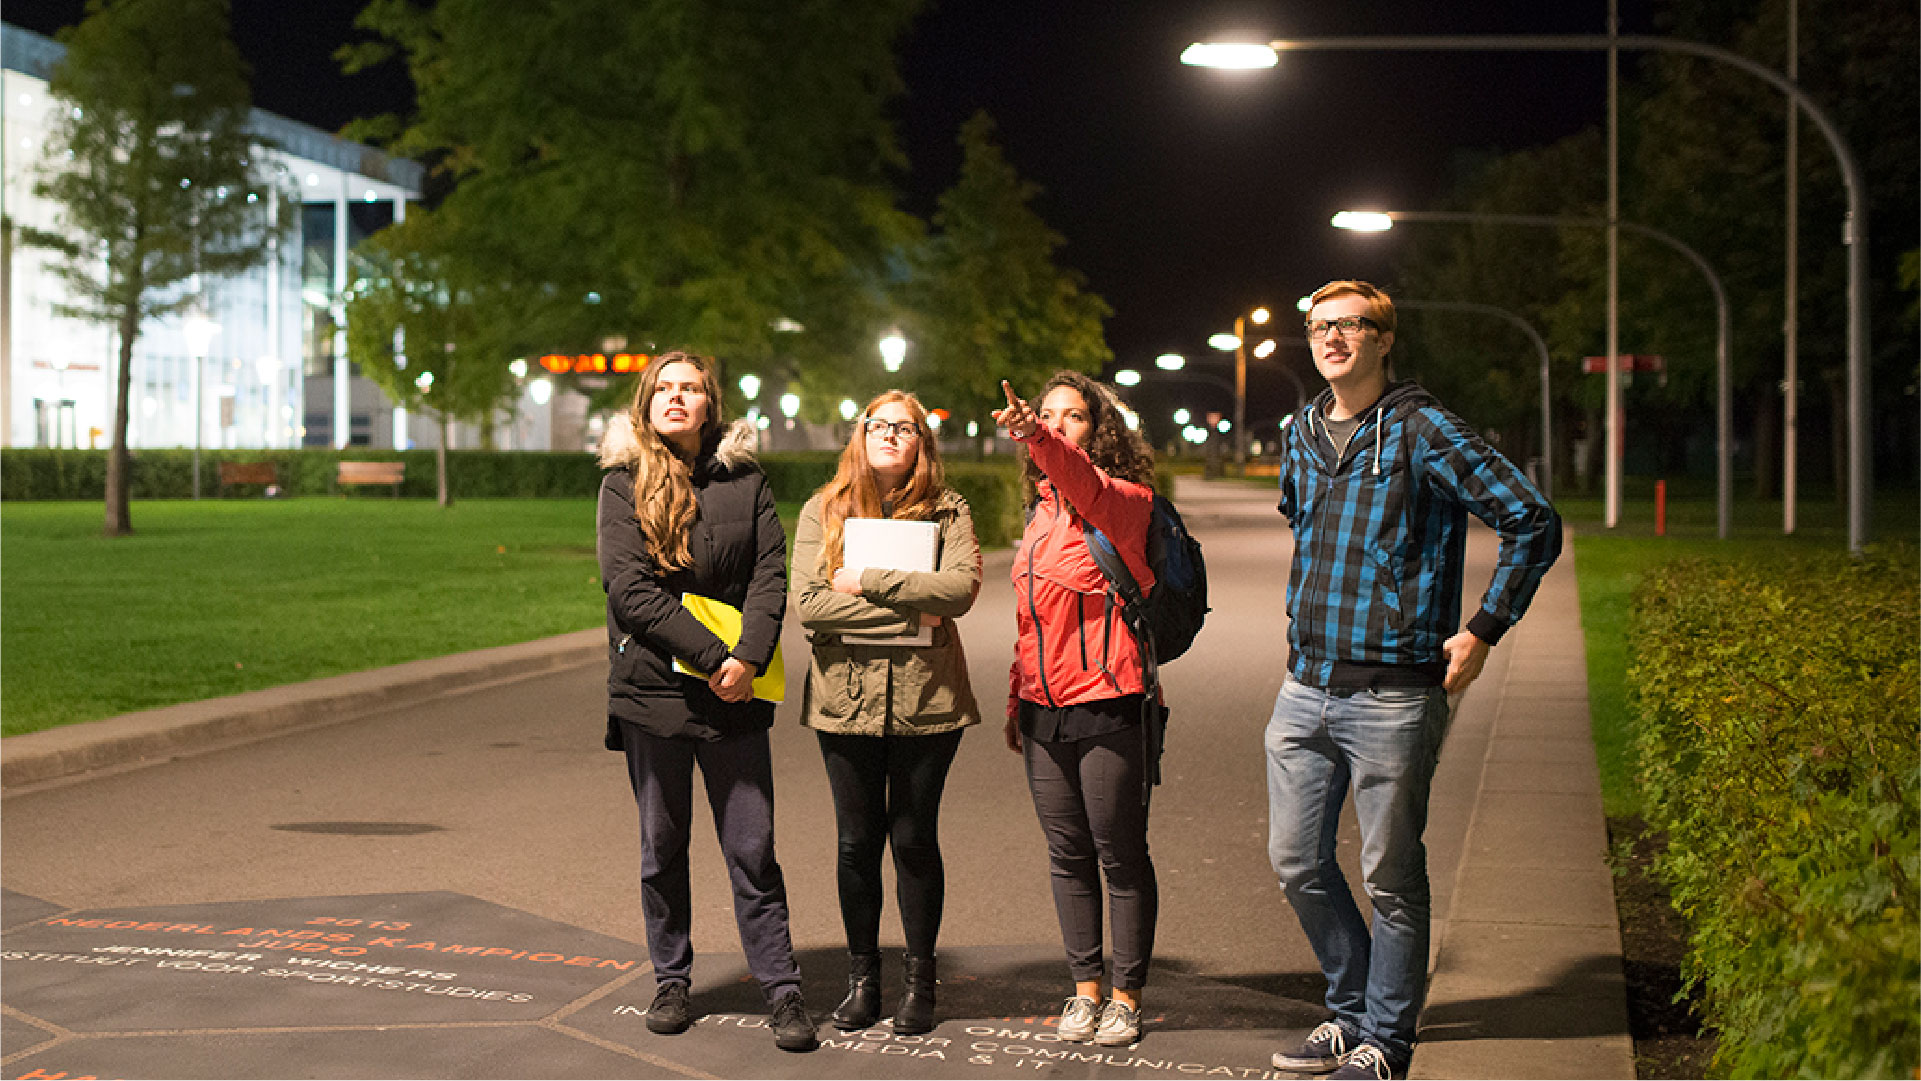 Smart Street Lights - Safe Campus